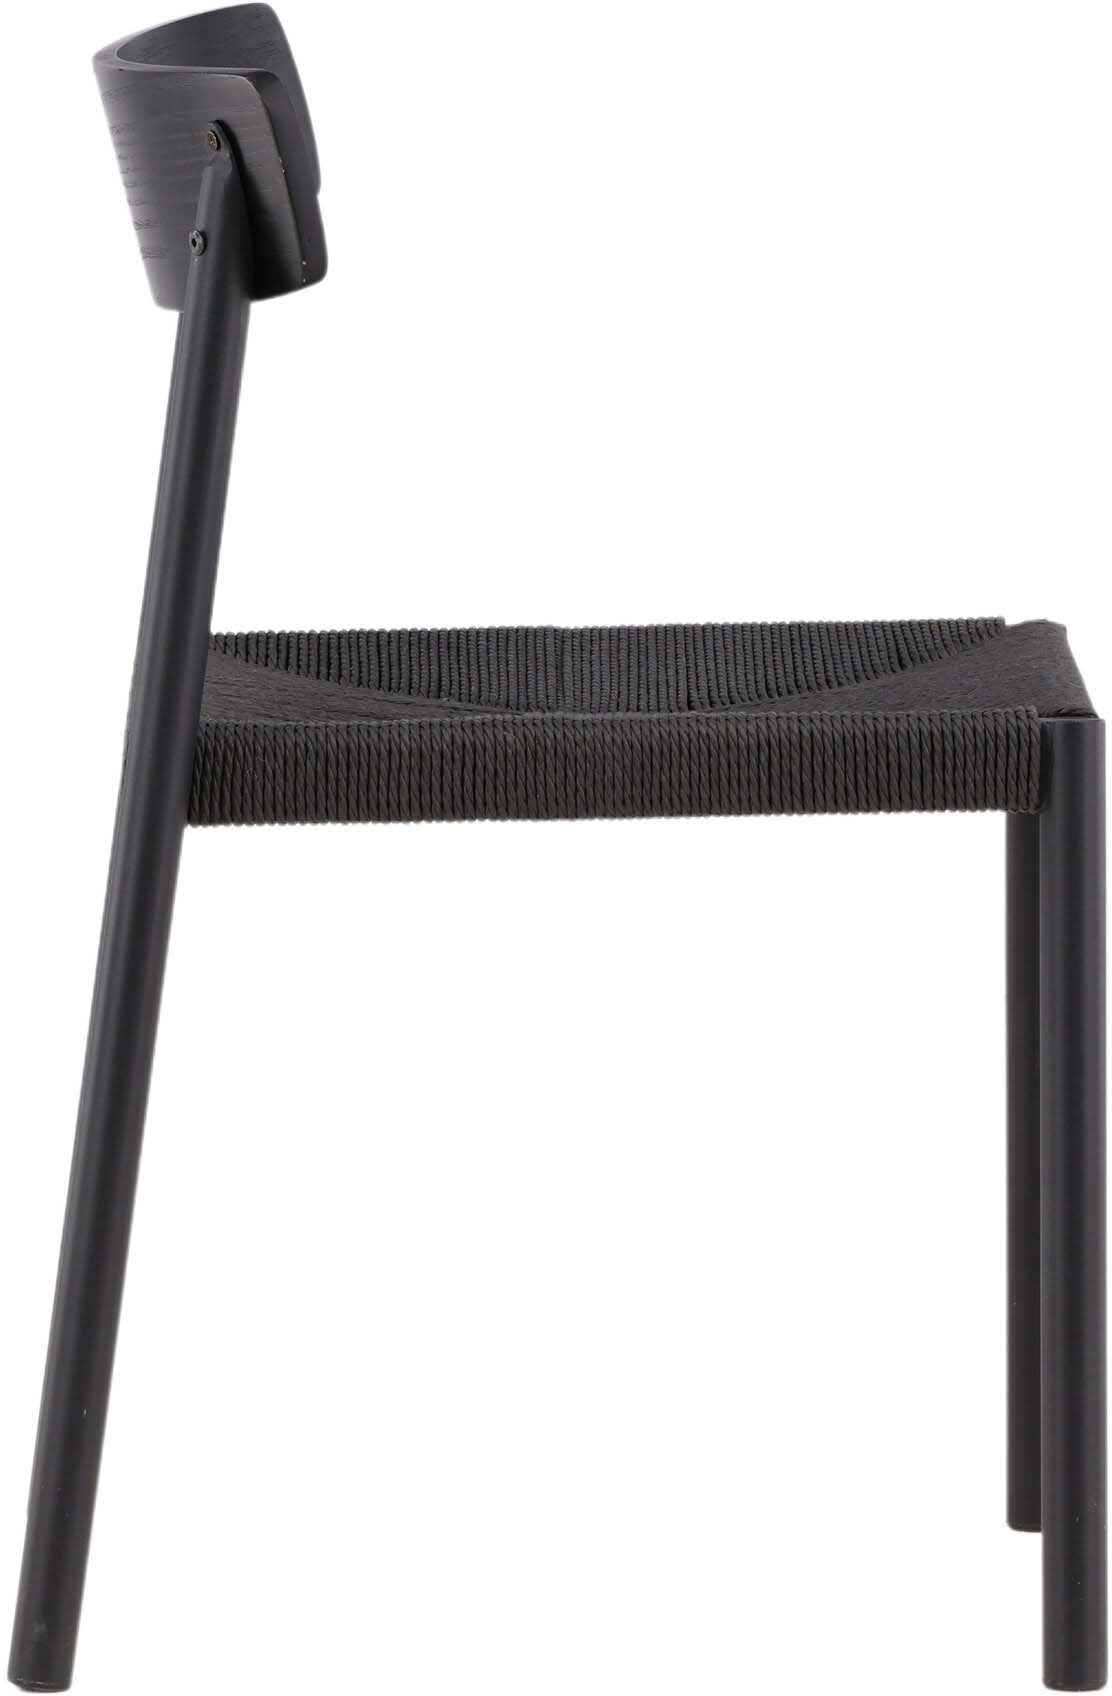 Malmö Stuhl in Schwarz präsentiert im Onlineshop von KAQTU Design AG. Stuhl ist von Vind